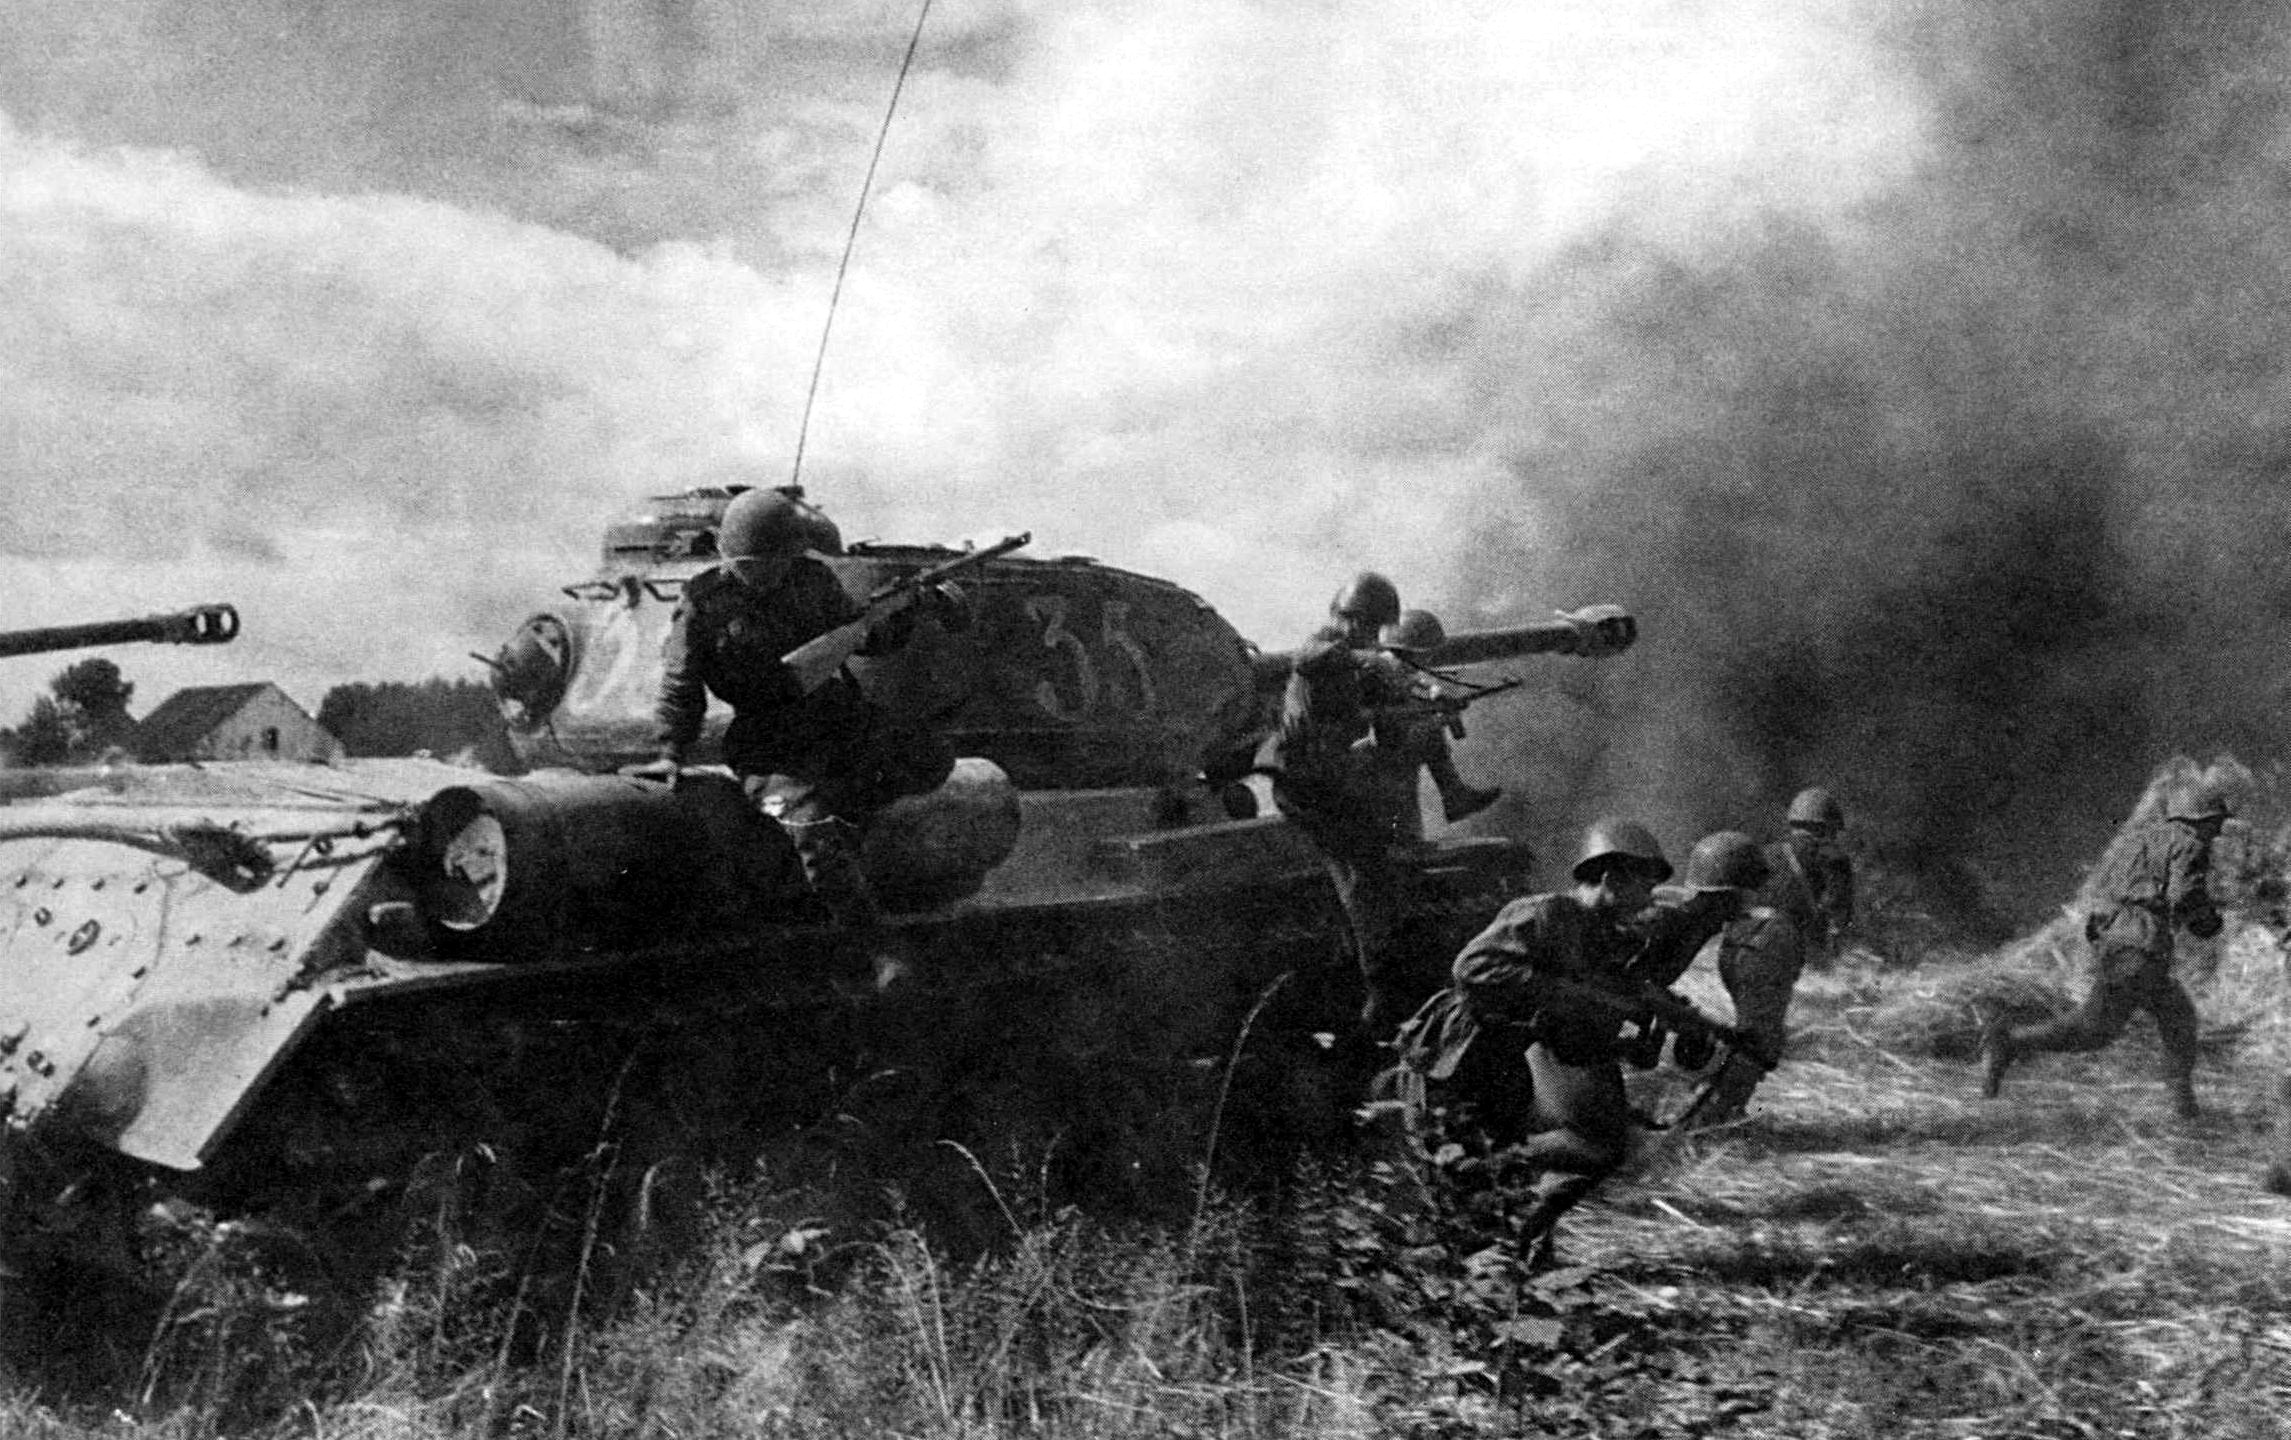 Нападение вов. Дебреценская операция 1944. Атака танков ВОВ 1941. Танкисты на войне 1941-1945. Танковый бой 1941-1945.